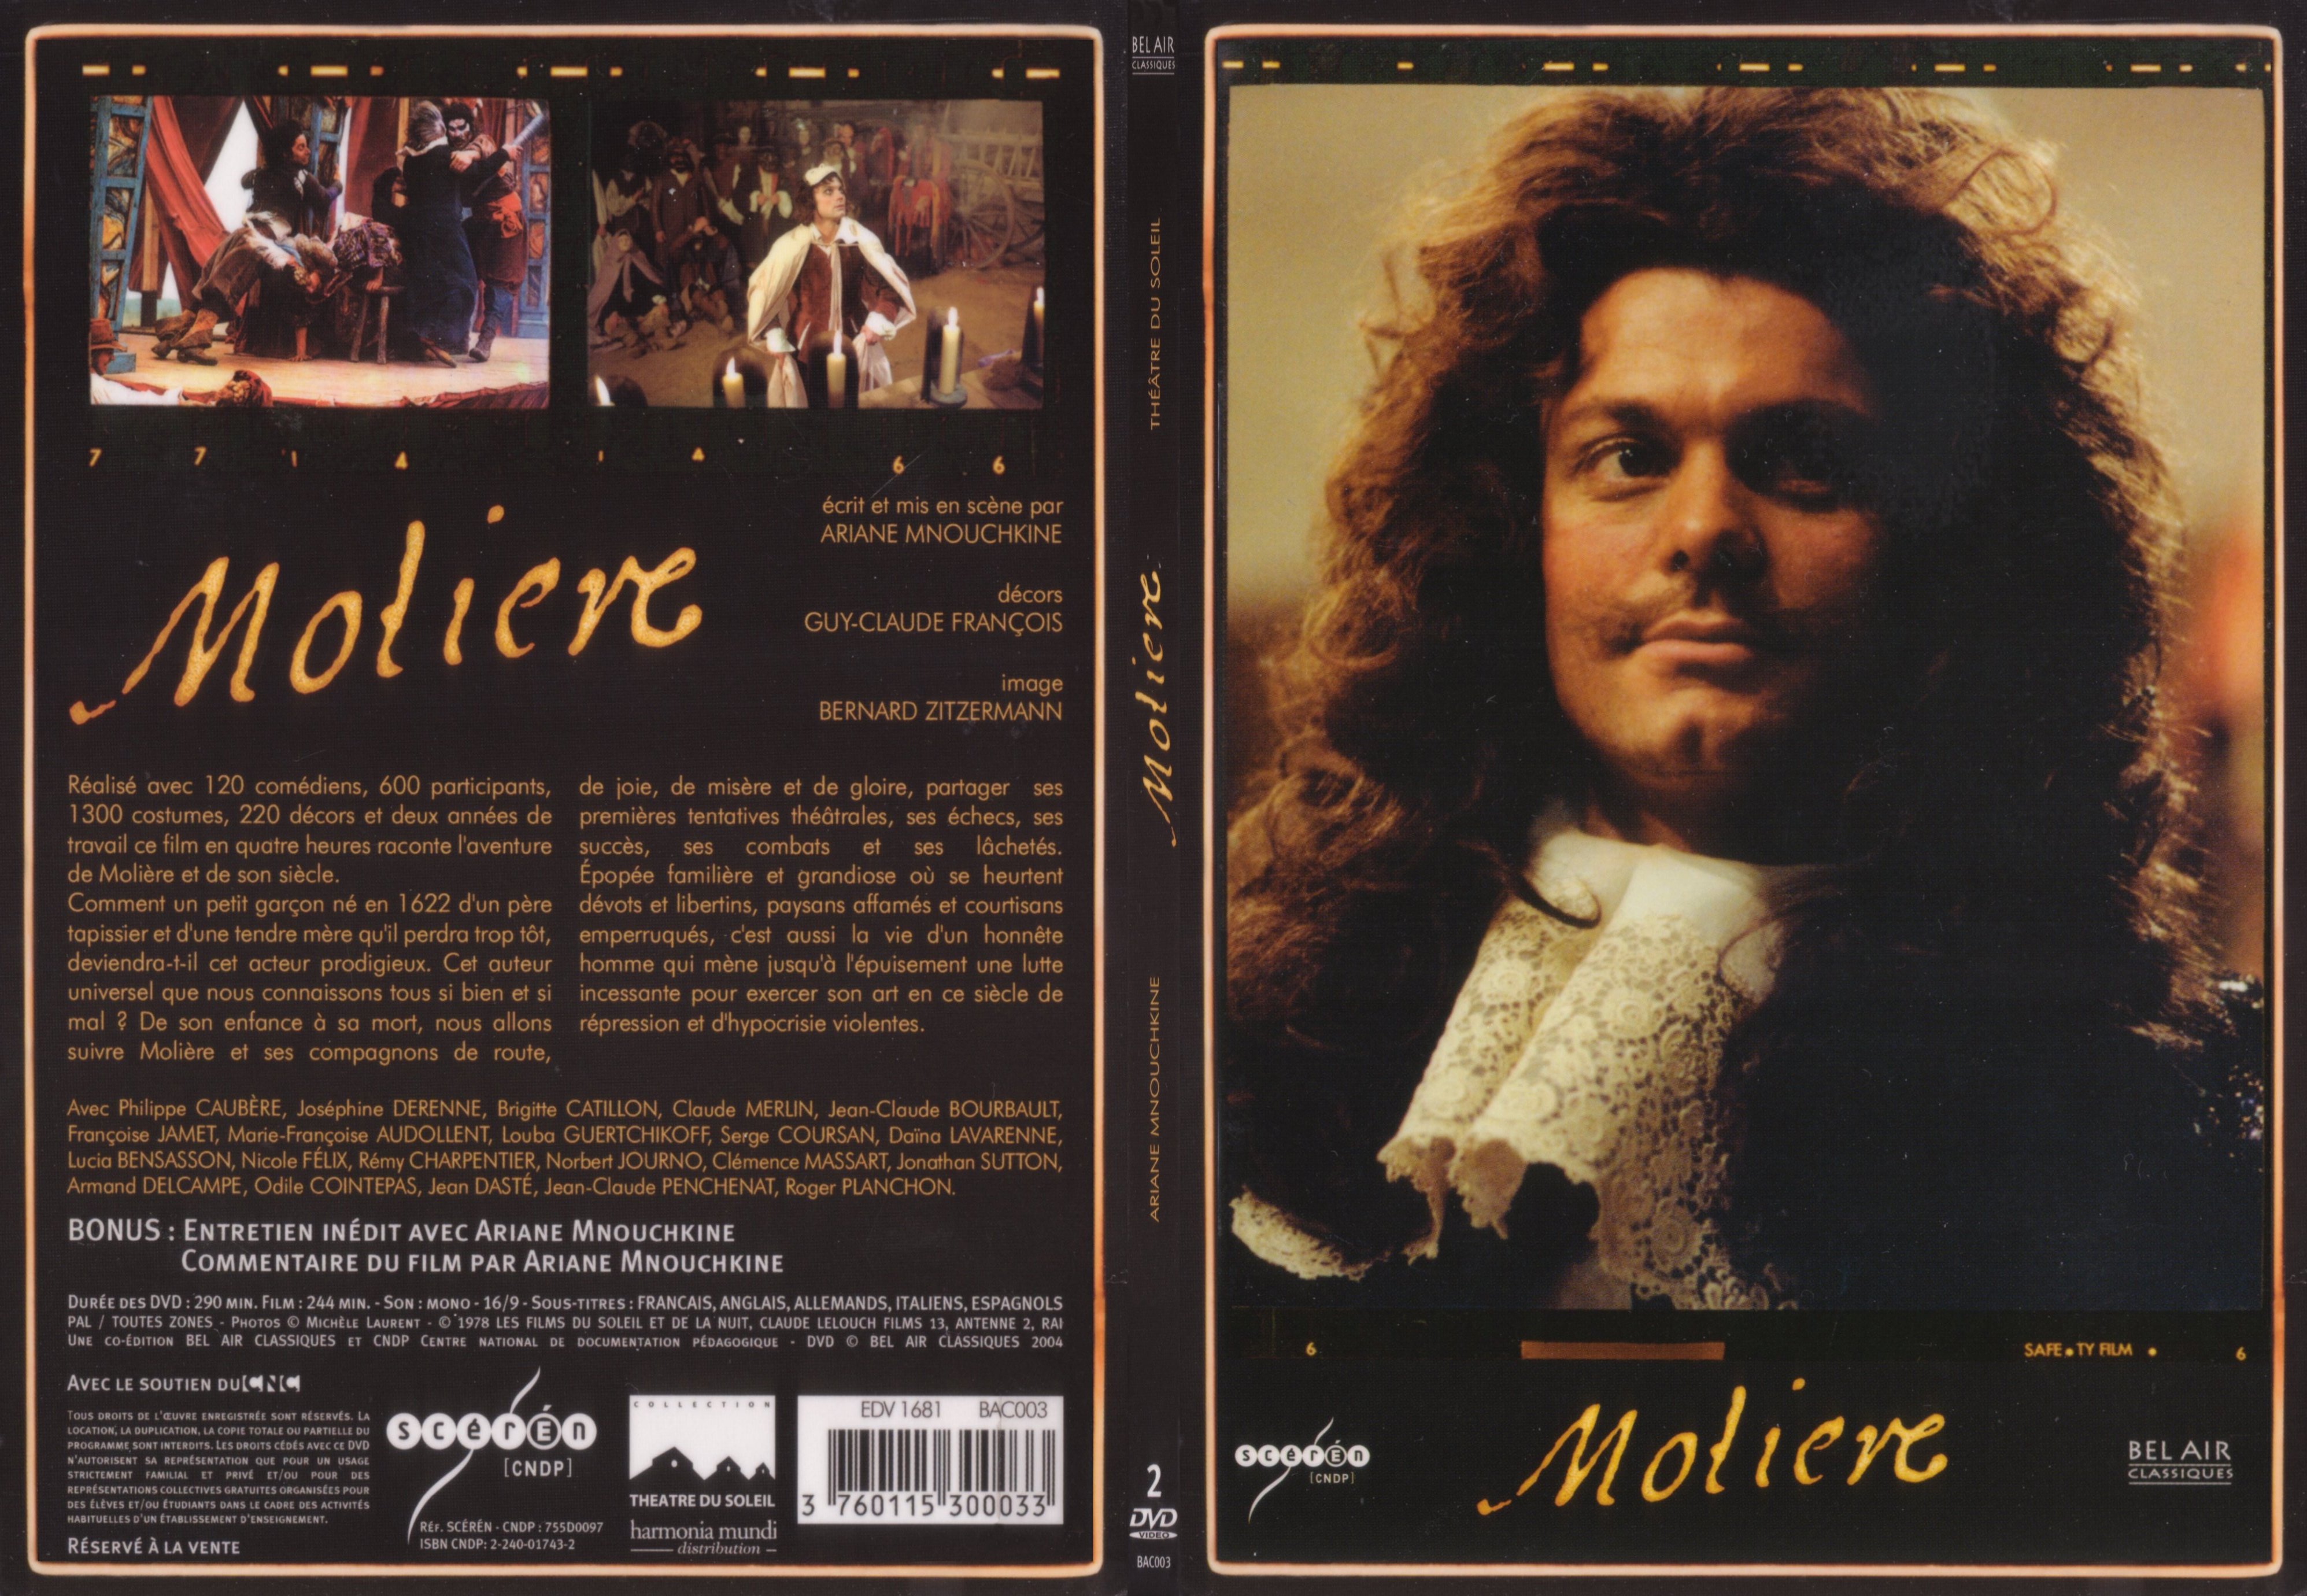 Jaquette DVD Moliere (Theatre 2004) - SLIM